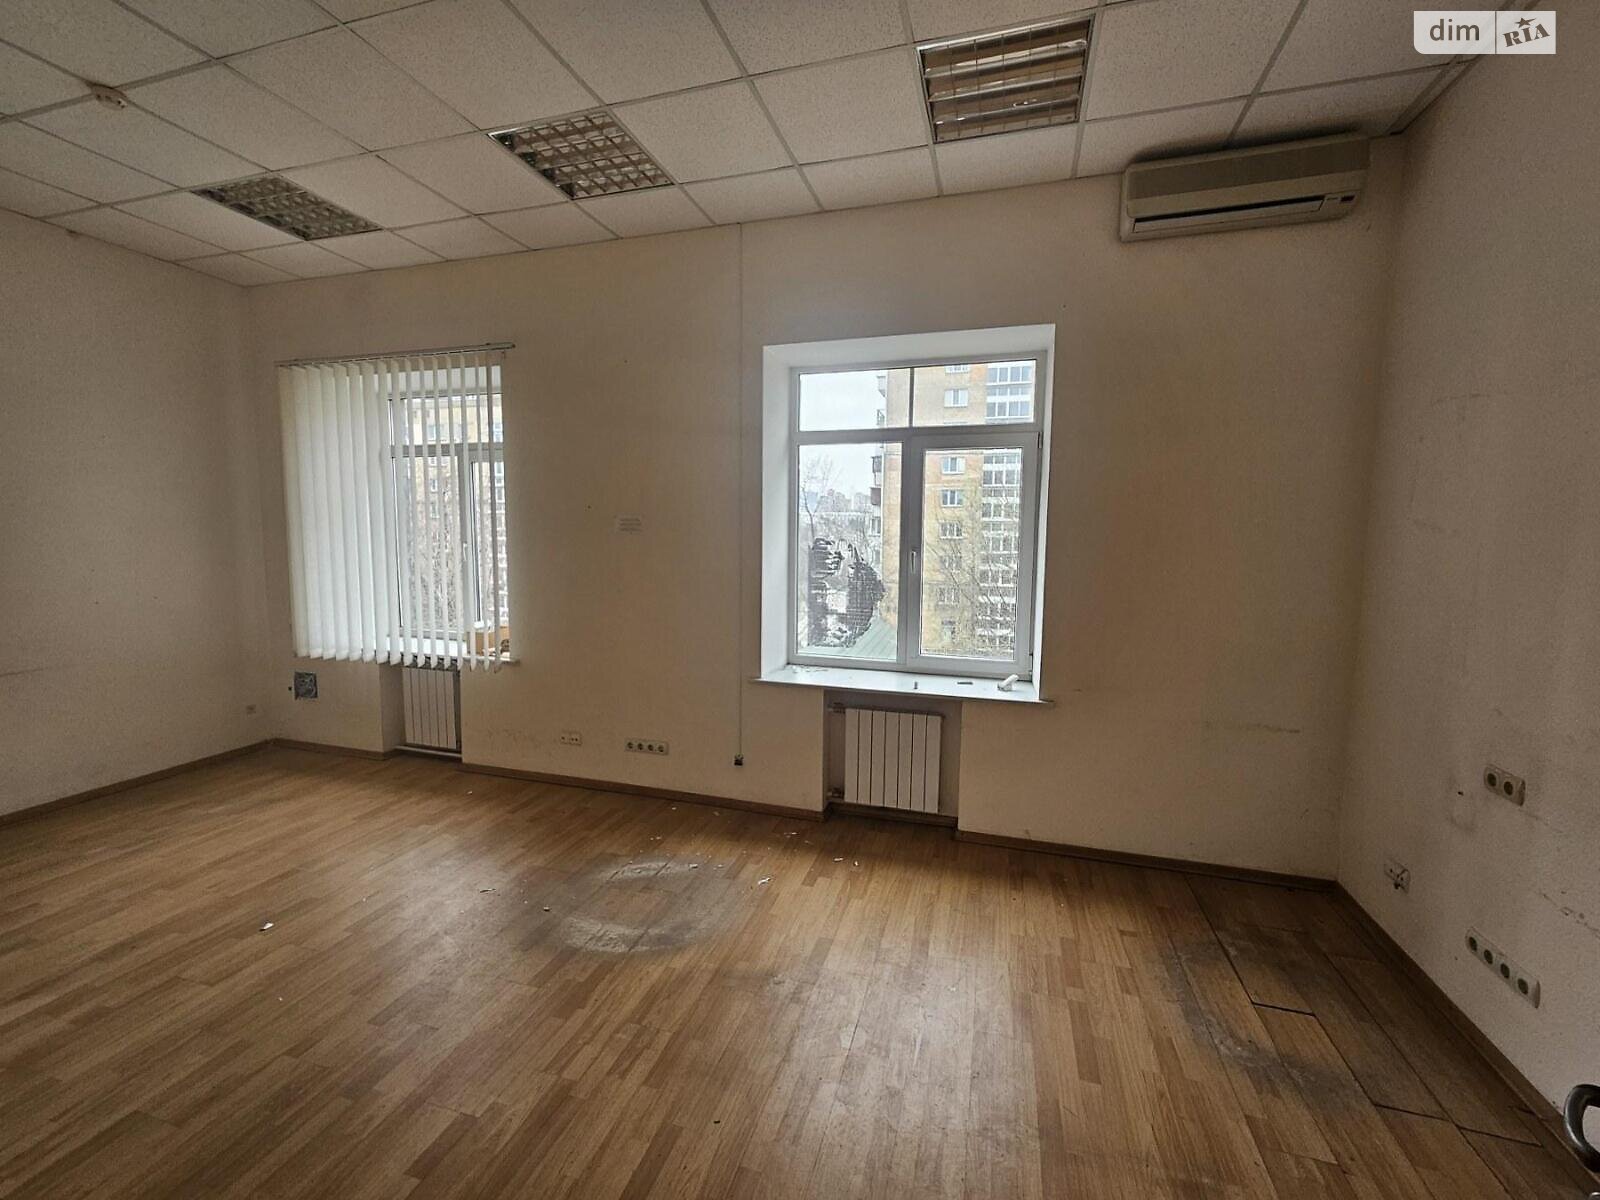 Аренда офисного помещения в Киеве, Исаакяна улица 3, помещений -, этаж - 1 фото 1